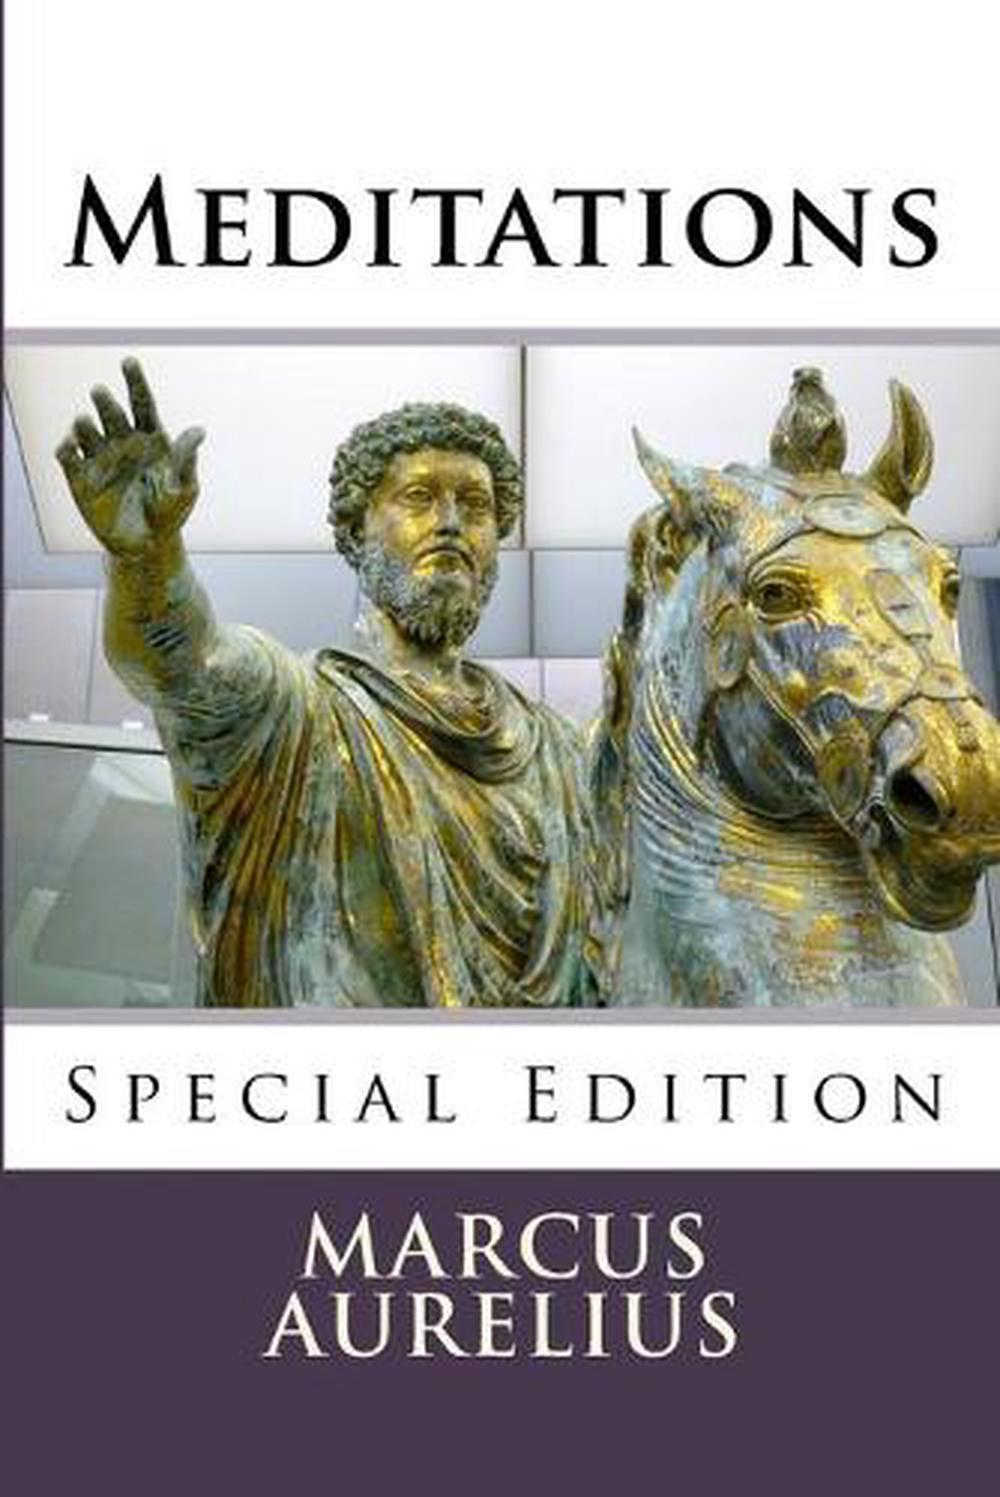 marcus aurelius meditations book